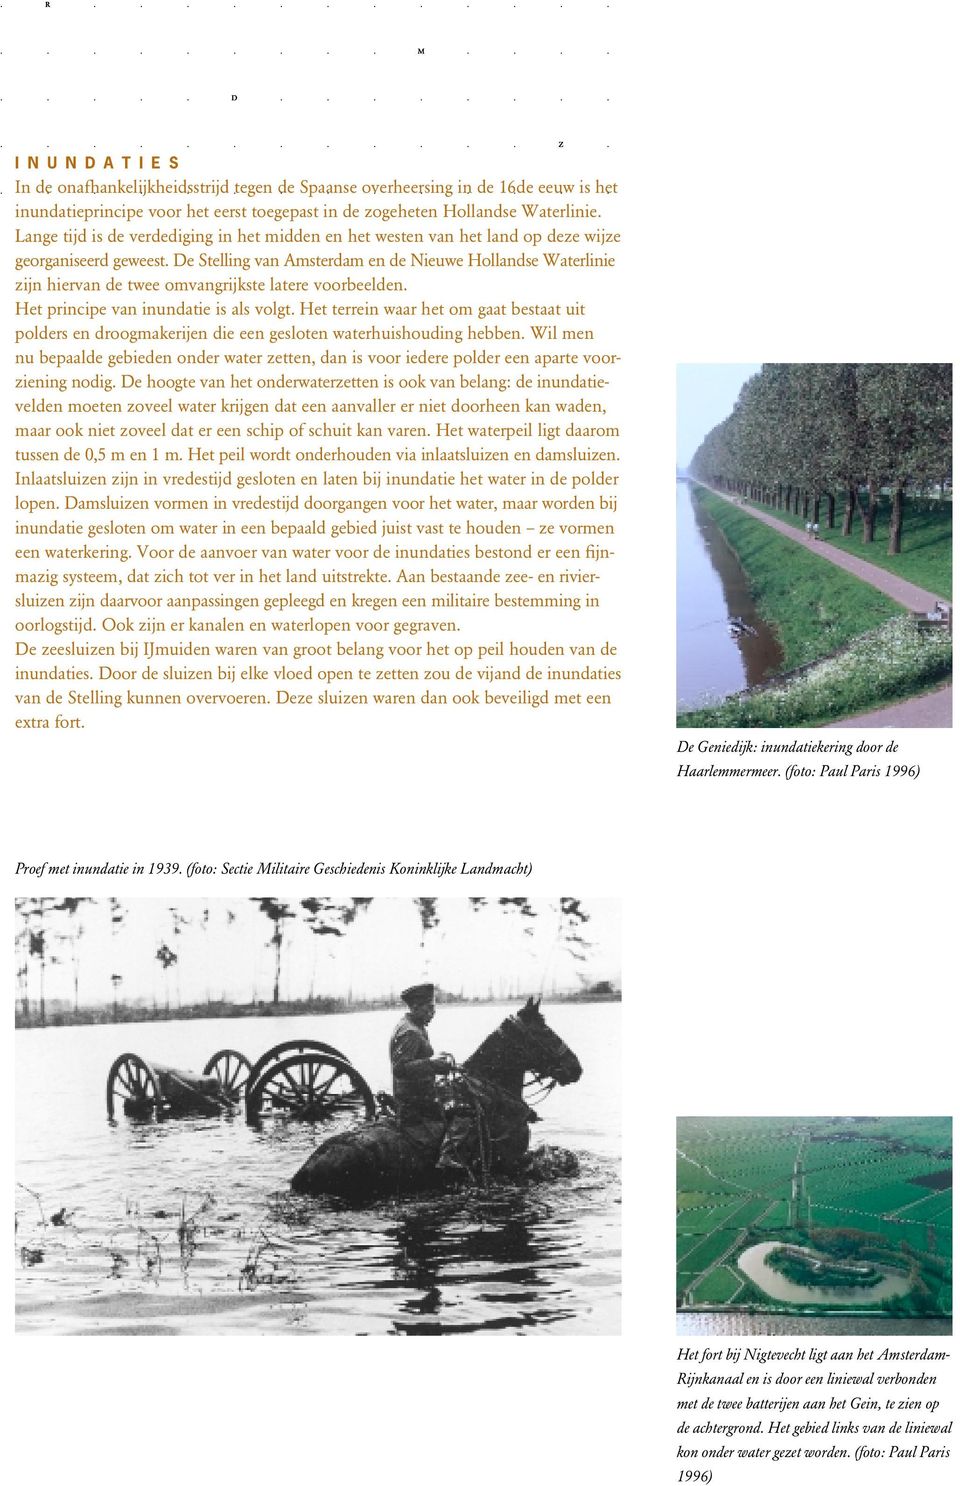 De Stelling van Amsterdam en de Nieuwe Hollandse Waterlinie zijn hiervan de twee omvangrijkste latere voorbeelden. Het principe van inundatie is als volgt.